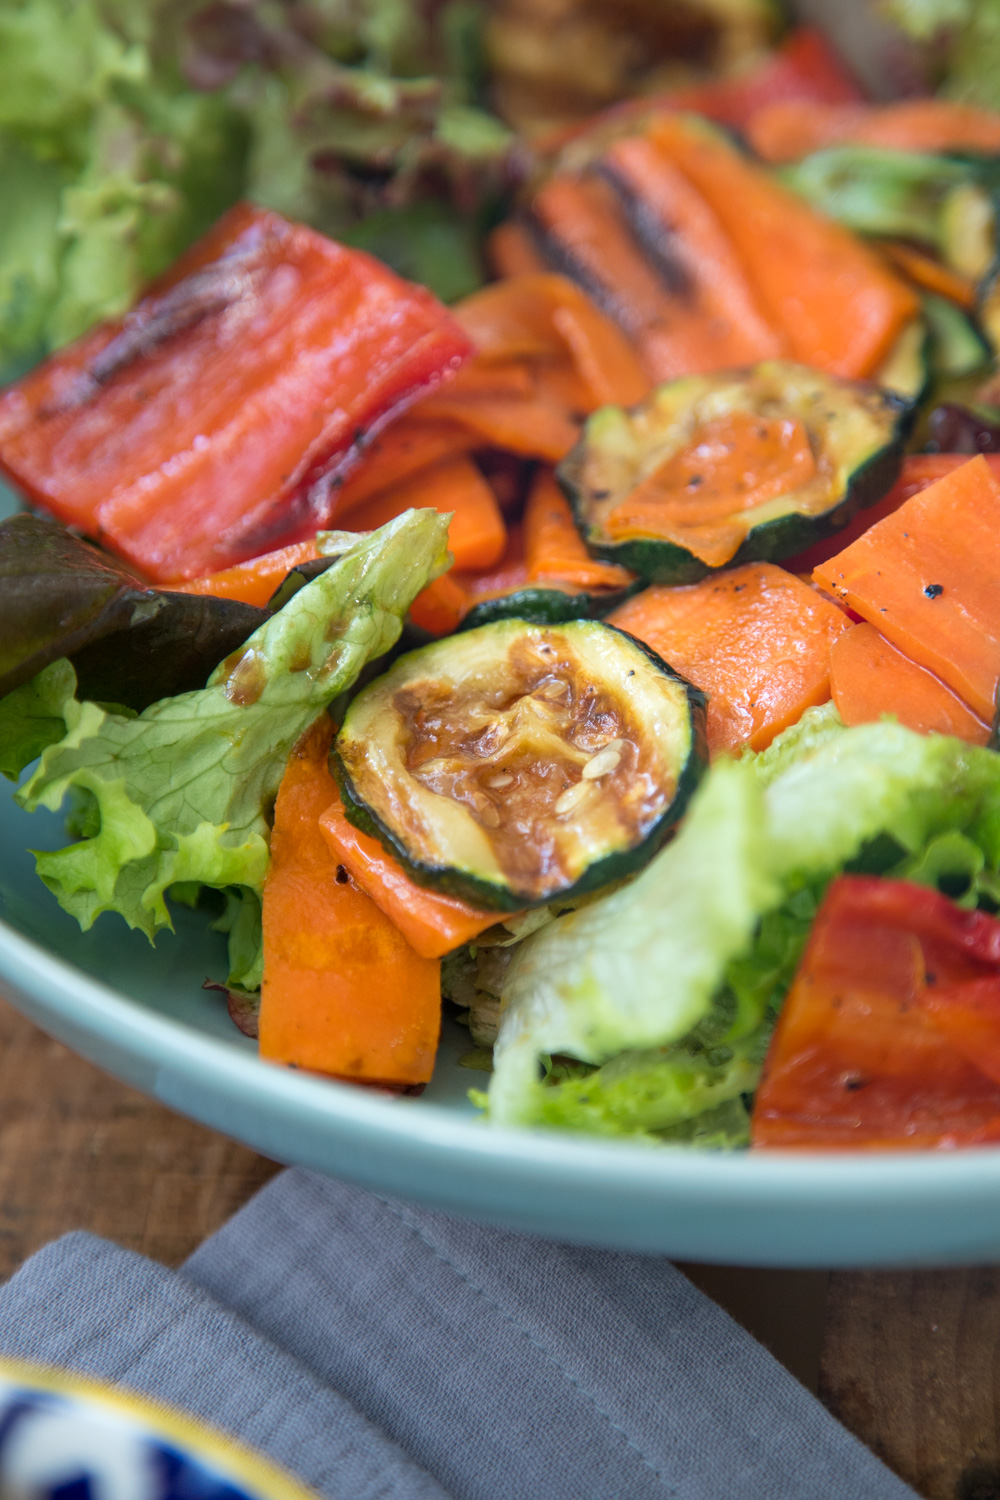 Salat mit gegrillter Paprika, Zucchini und Karotten sorgt für Röstaromen auf dem Salatteller. Eine tolle alternative Salatidee, die ohne Aufwand viel hermacht.